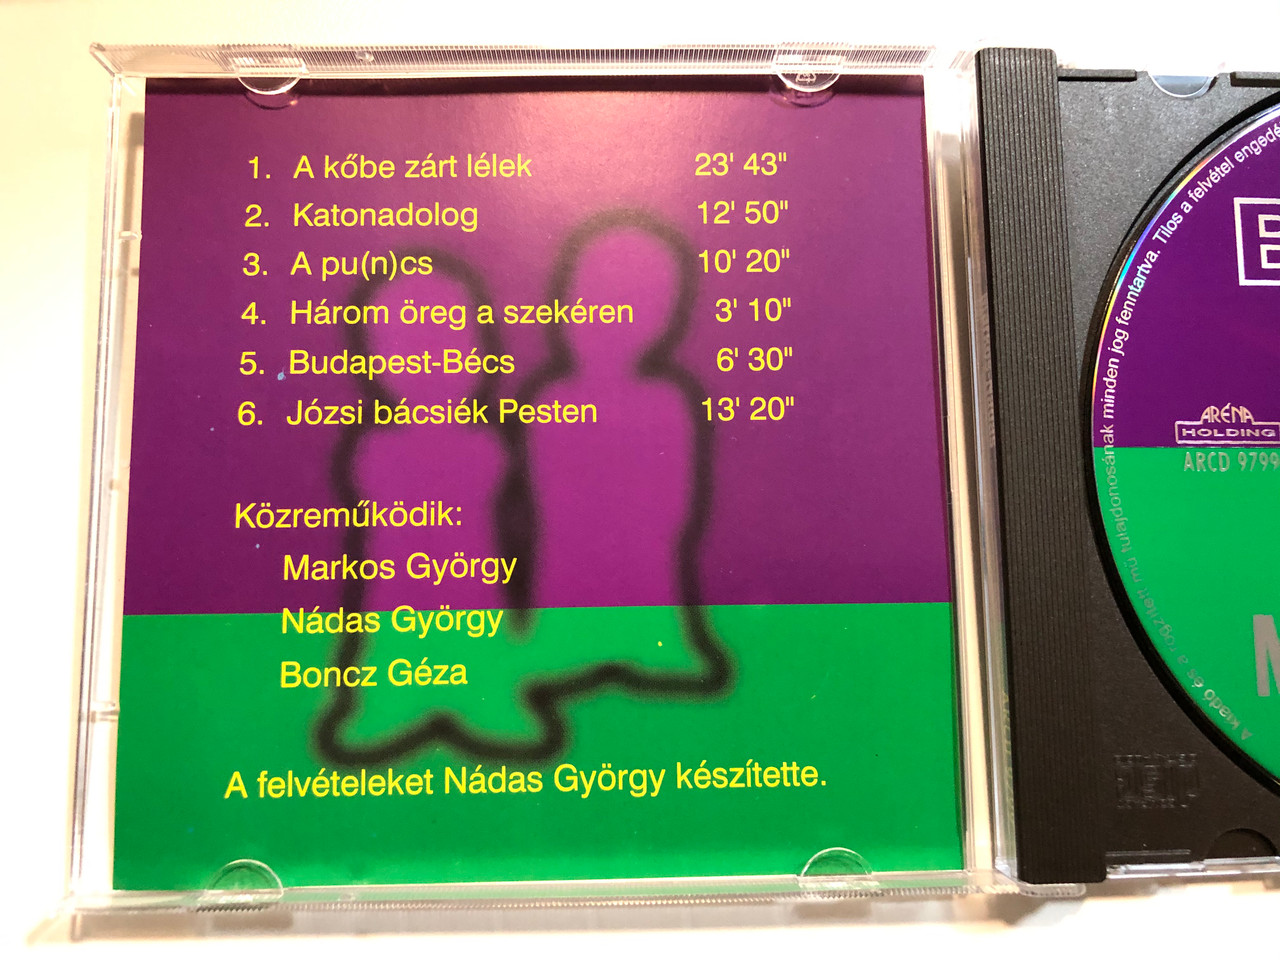 Best Of Markos-Nadas / Arena Holding Audio CD / ARCD 9799 -  bibleinmylanguage